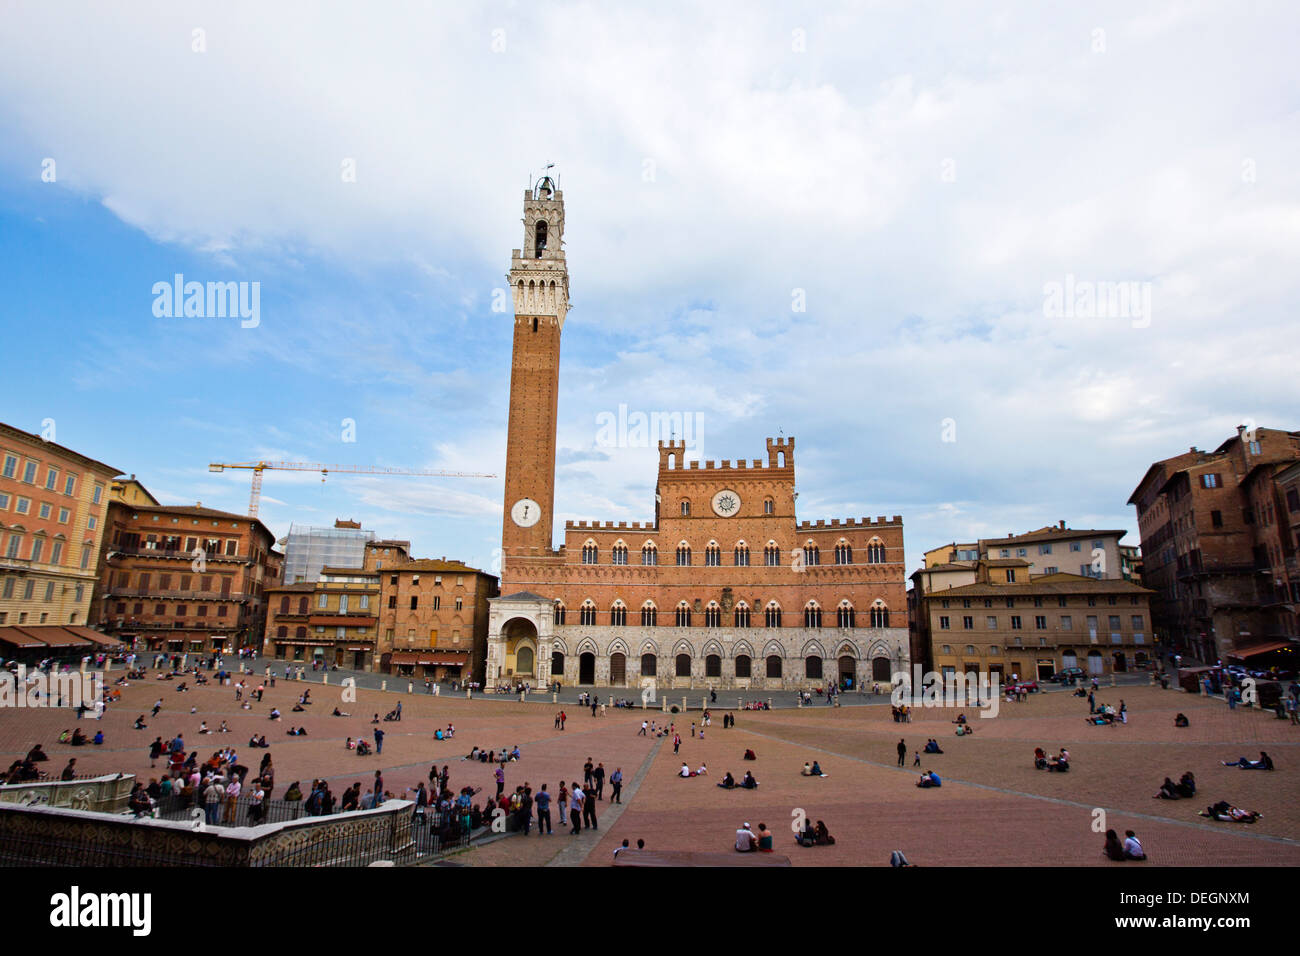 Hôtel de ville dans une ville, la Torre del Mangia, le Palazzo Pubblico, Piazza del Campo, Sienne, Toscane, Italie Banque D'Images